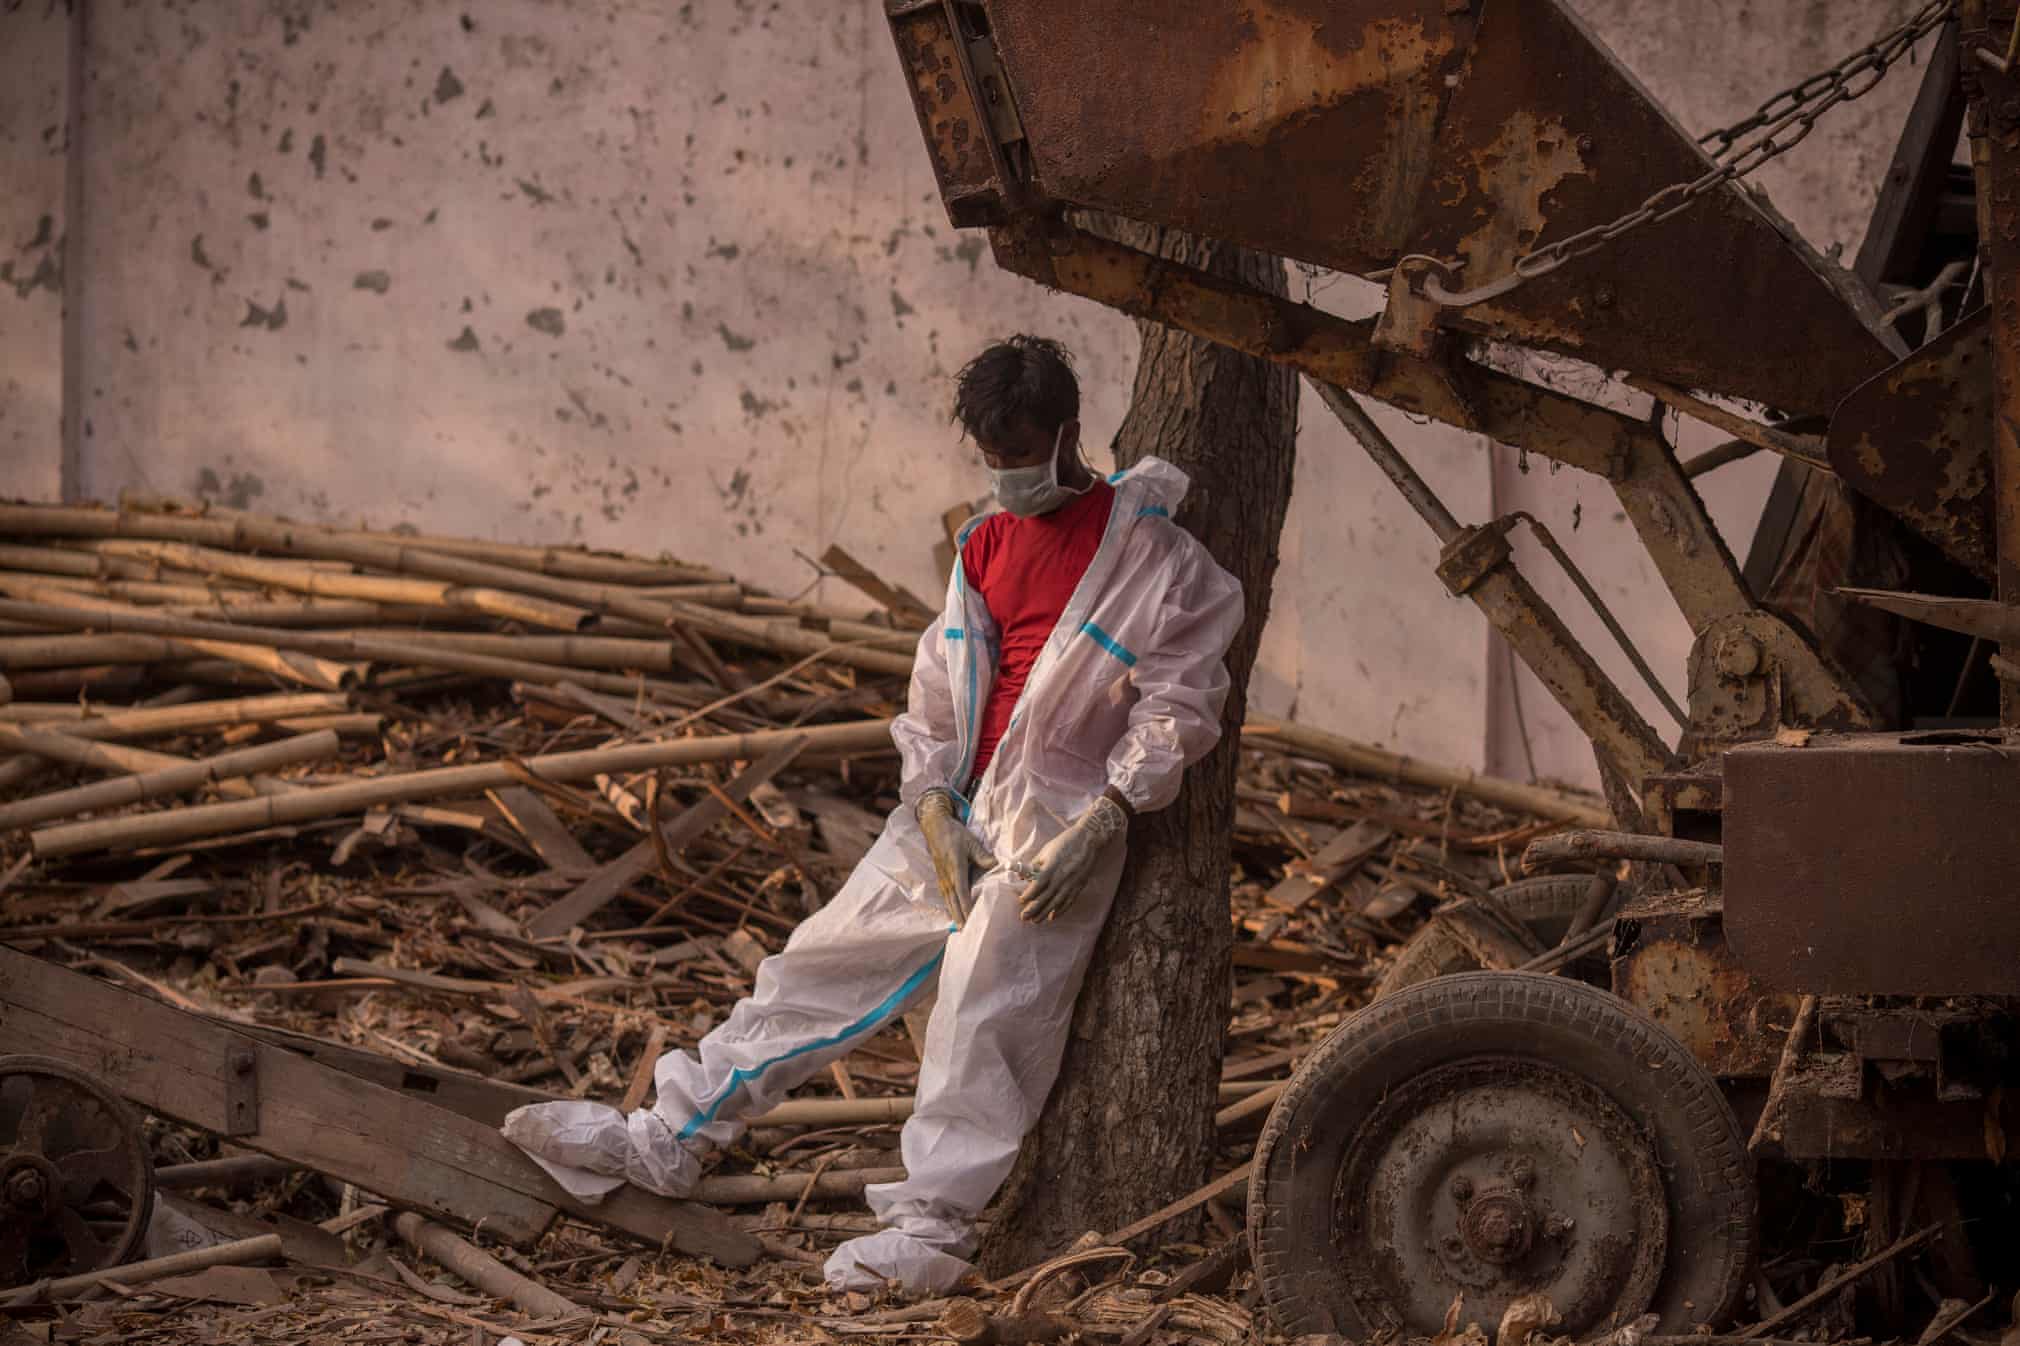 تصویر تکان دهنده از کارگر سوزاننده اجساد در هند+عکس